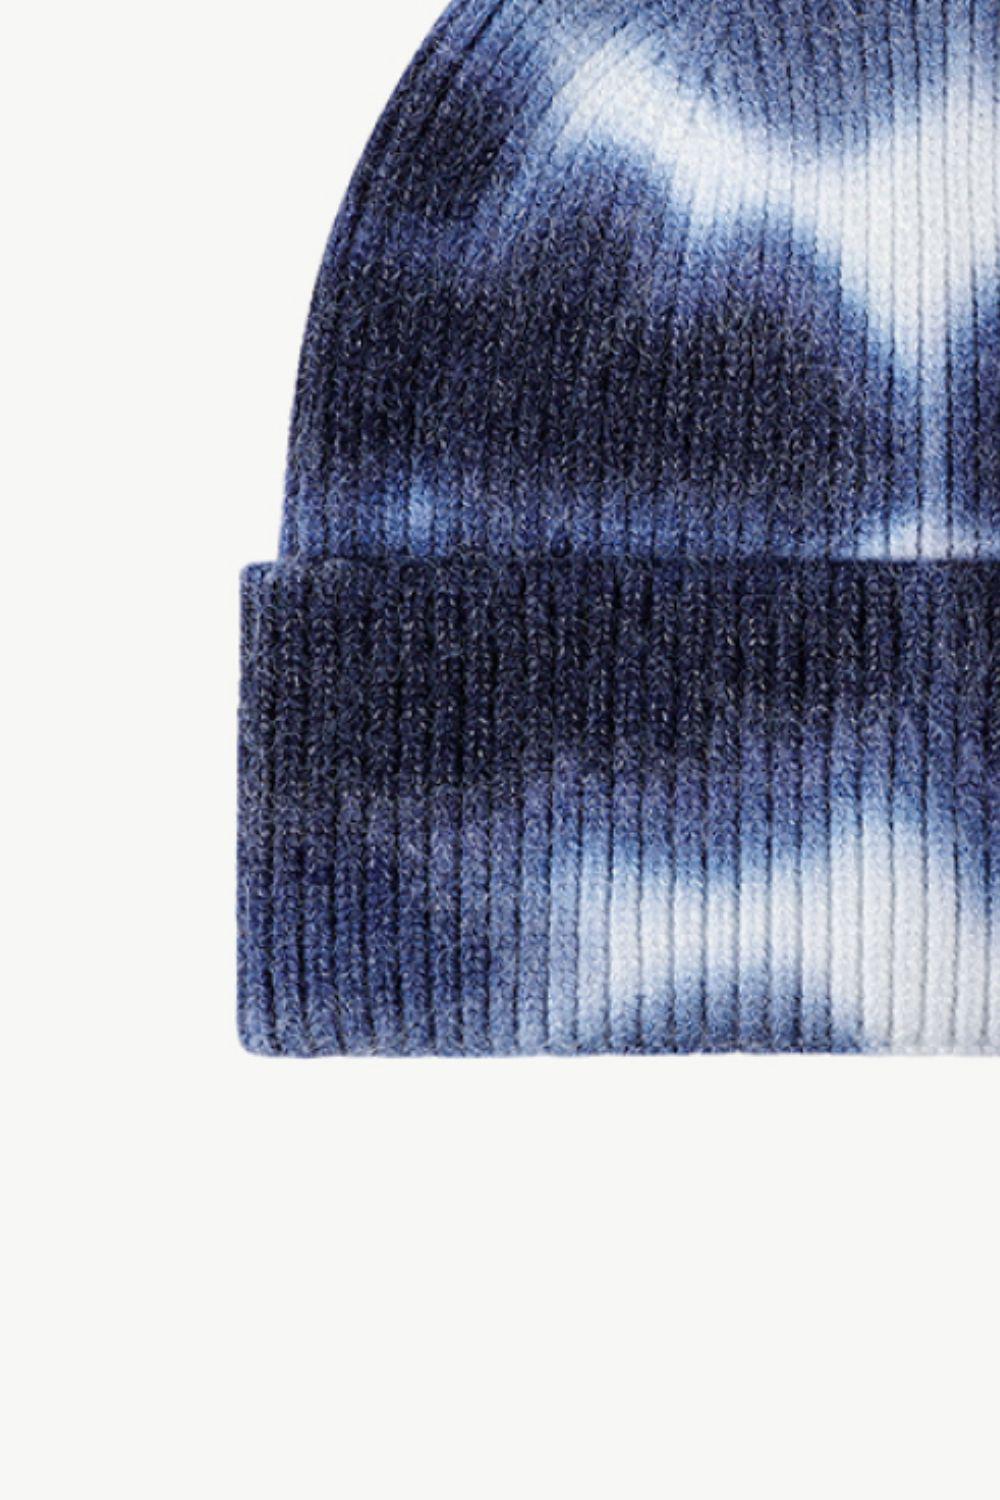 Tie-Dye Cuffed Knit Beanie-BEANIES-[Adult]-[Female]-2022 Online Blue Zone Planet